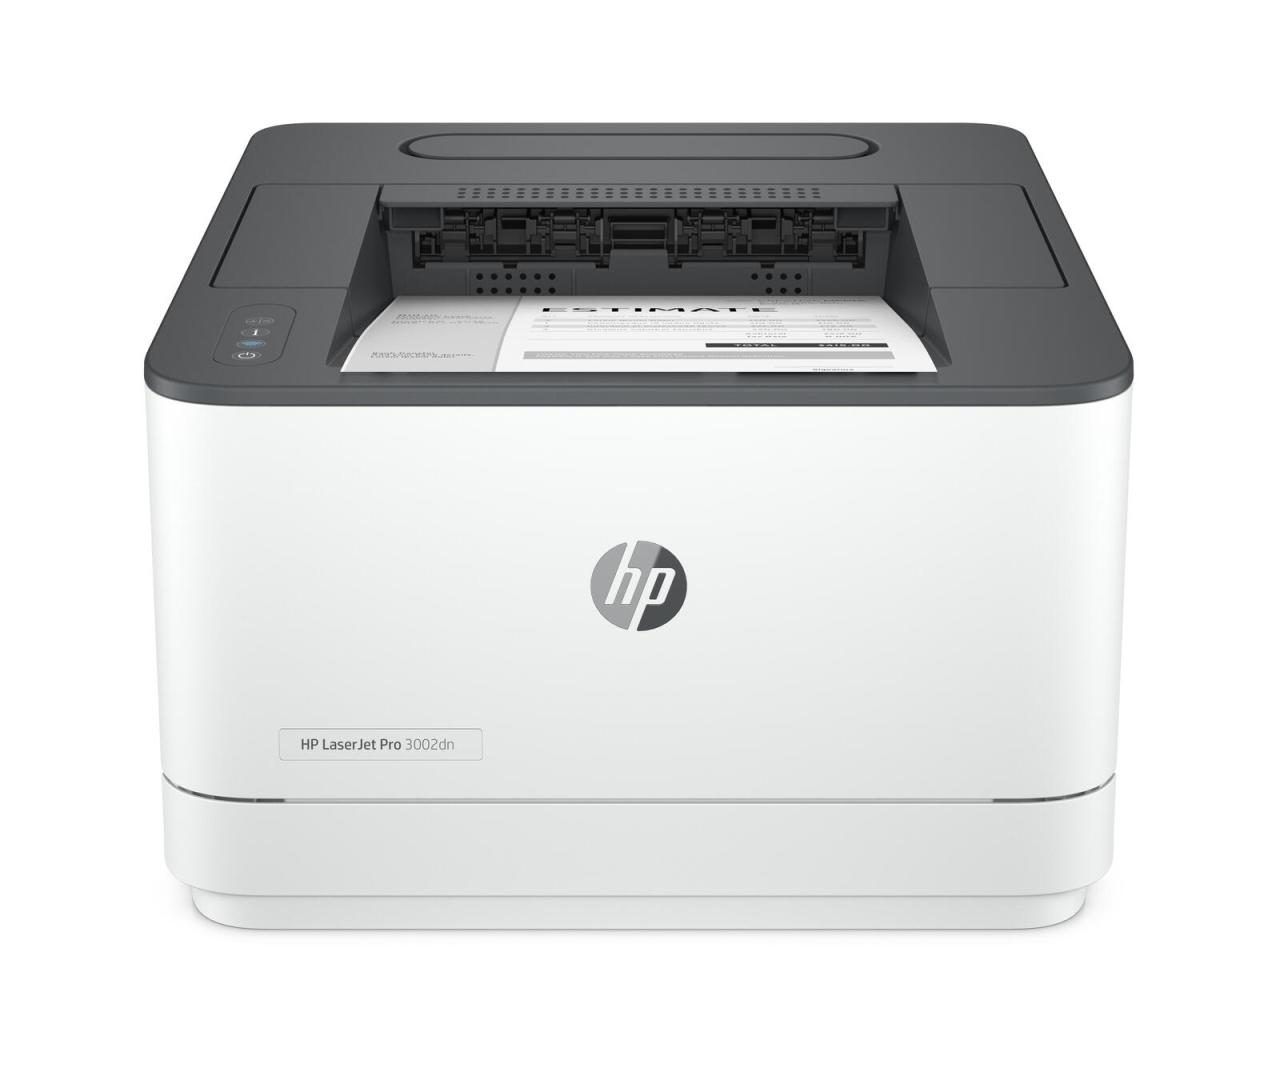 HP LaserJet Pro 3002dn Laserdrucker s/w von HP Inc.